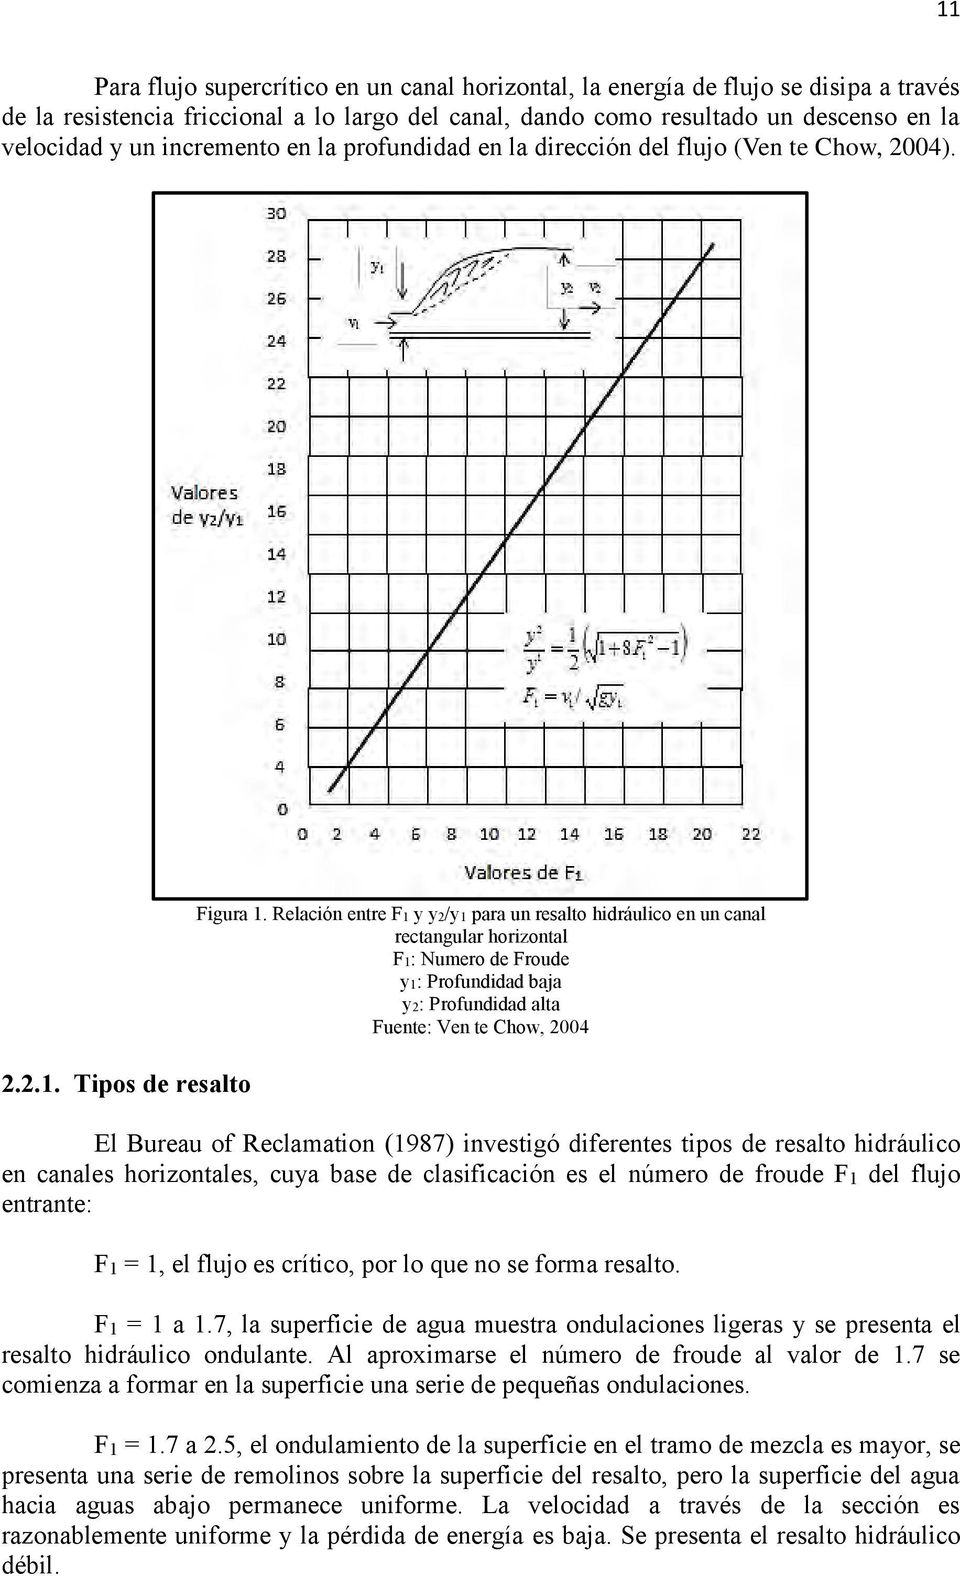 Relación entre F1 y y2/y1 para un resalto hidráulico en un canal rectangular horizontal F1: Numero de Froude y1: Profundidad baja y2: Profundidad alta Fuente: Ven te Chow, 2004 El Bureau of